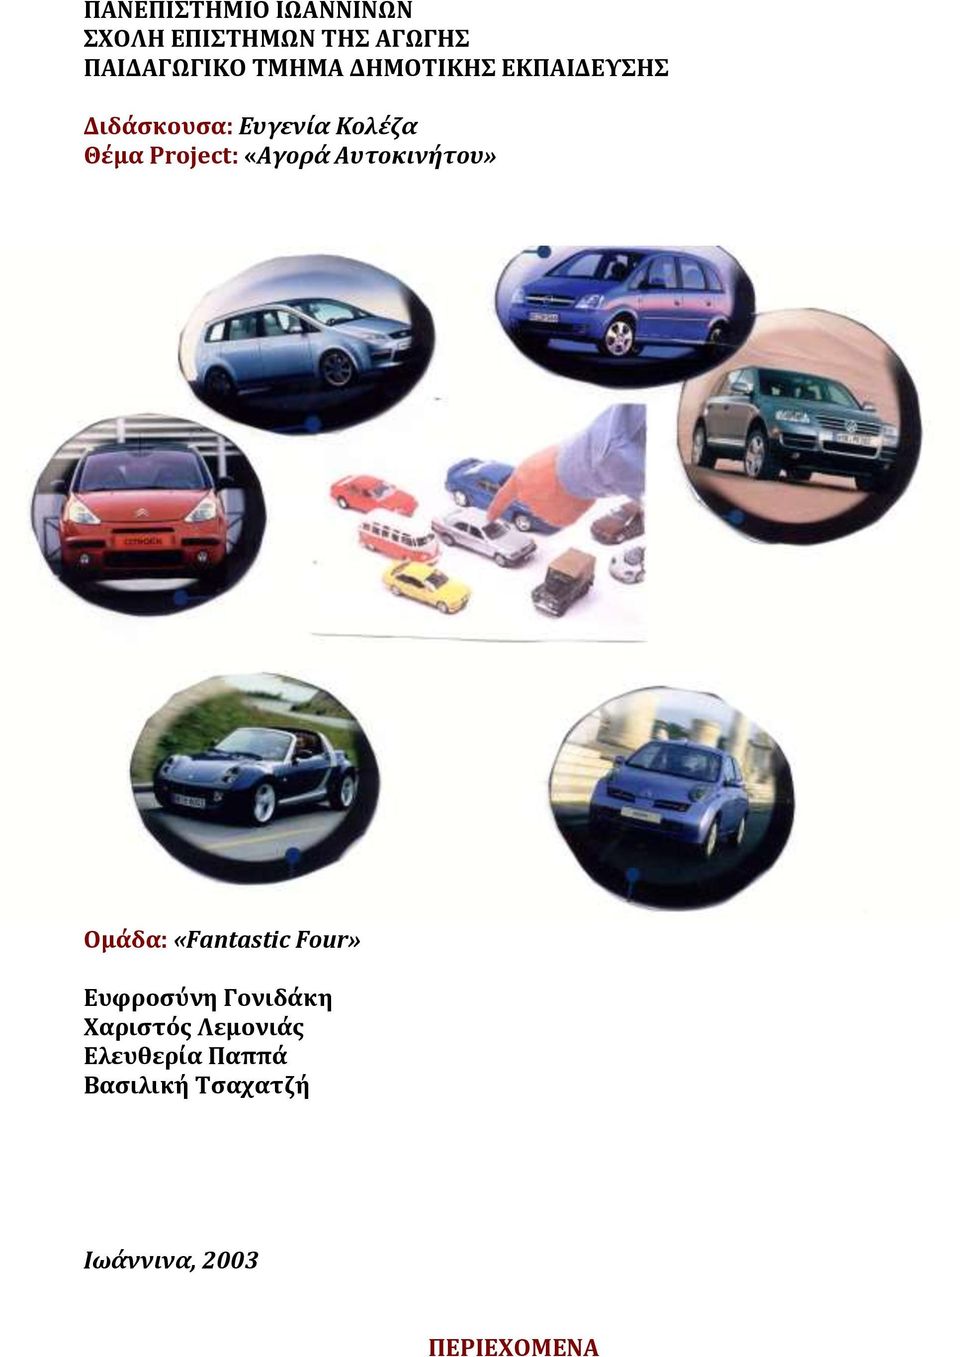 «Αγορά Αυτοκινήτου» Ομάδα: «Fantastic Four» Ευφροσύνη Γονιδάκη